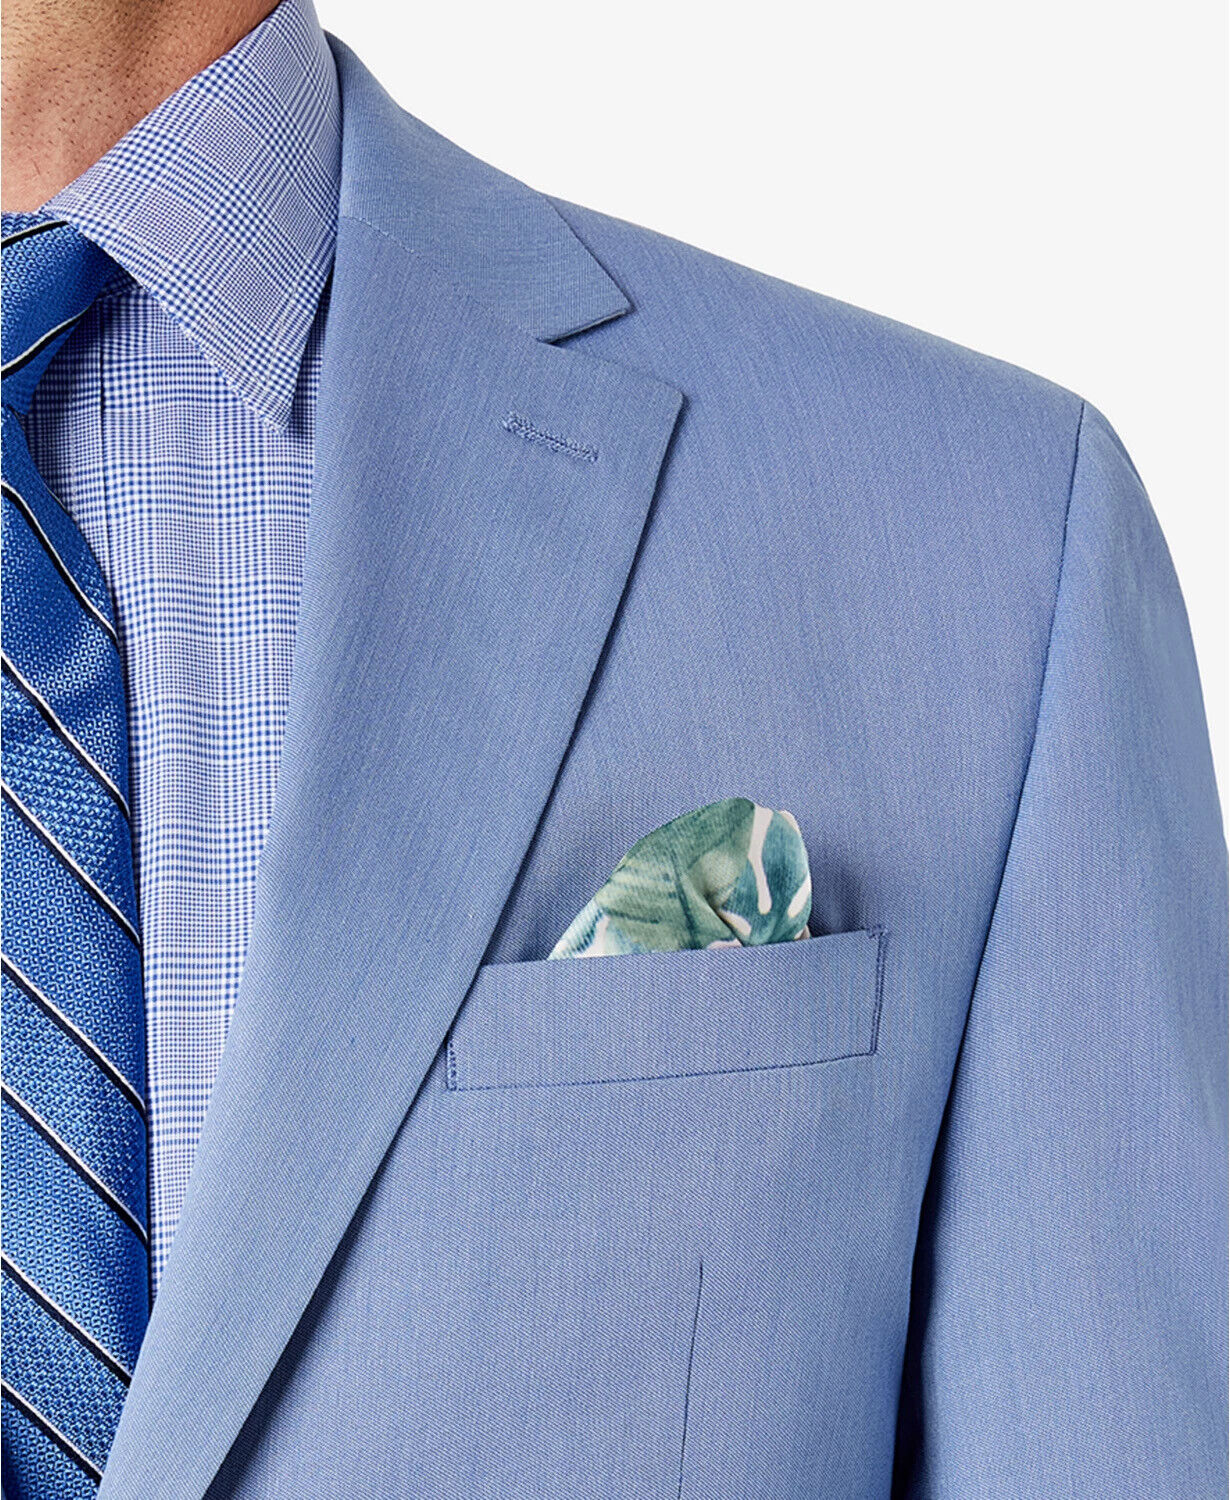 Sean John Men's Classic-Fit Solid Suit Jacket Light Blue 38S Two Button